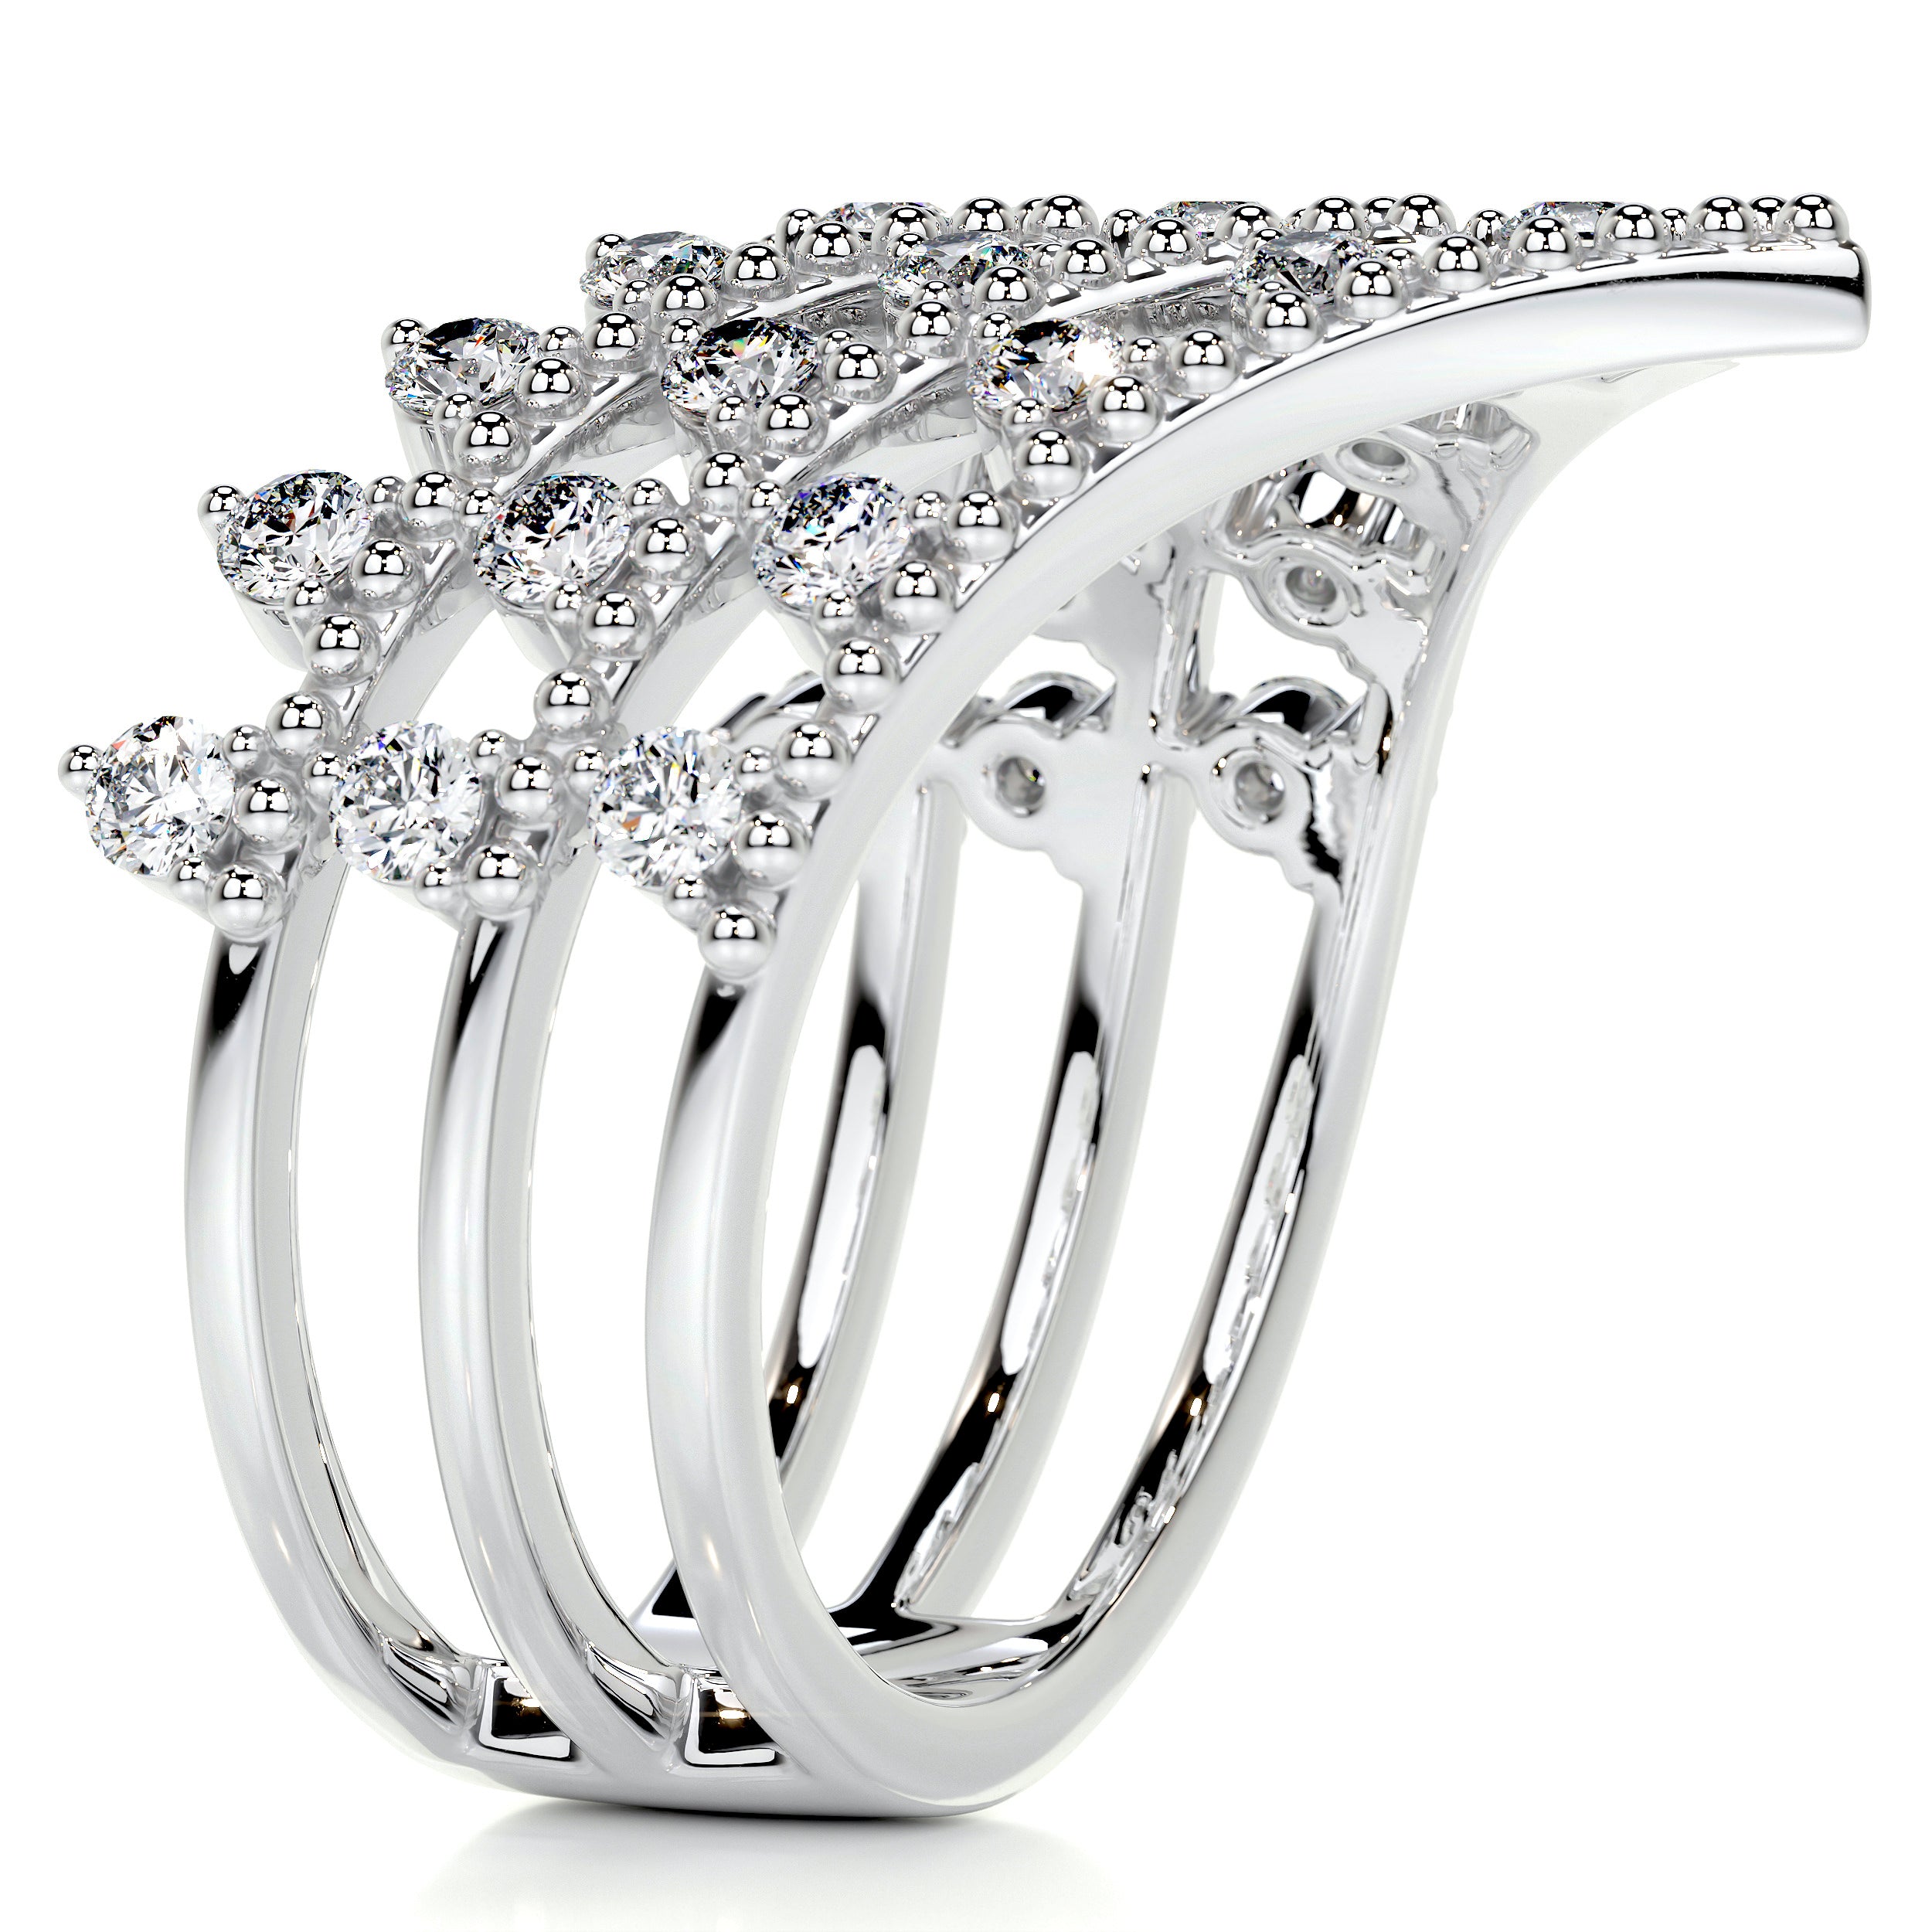 Reina Fashion Diamond  Ring   (0.83 Carat) -18K White Gold